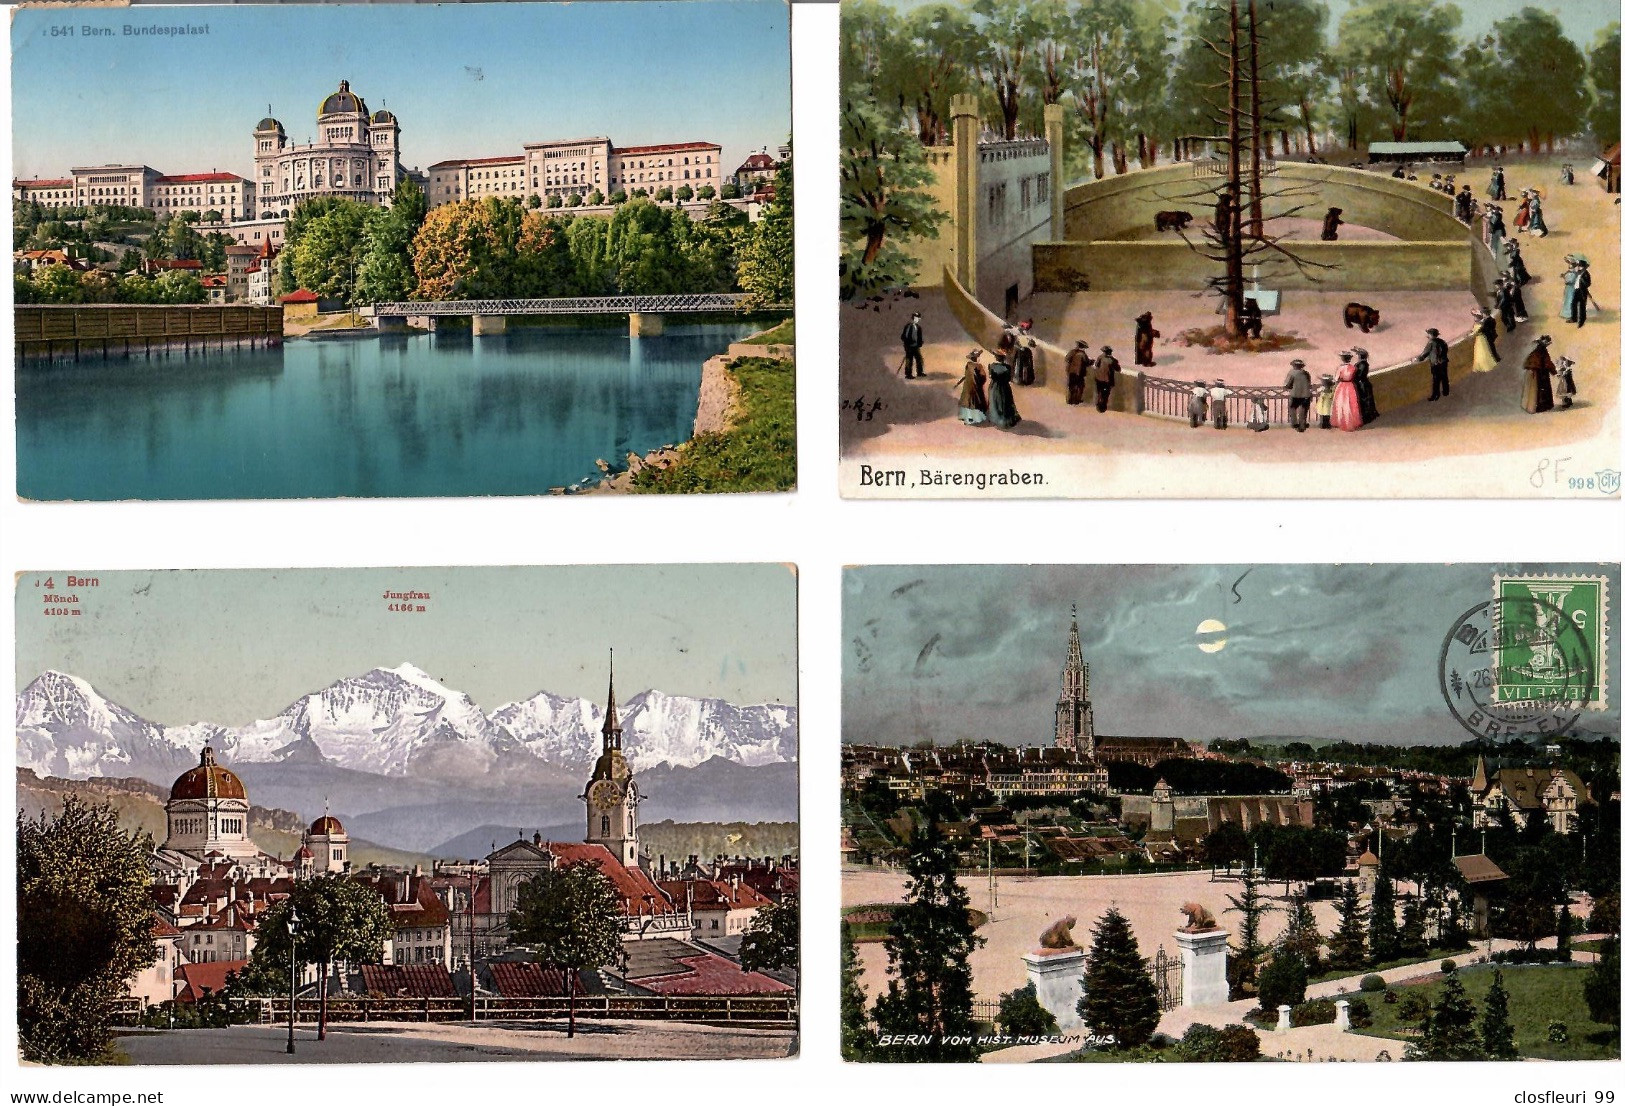 lot de 31 Ansichtskarten aus Bern un Umgebung. Vorlaüferkarten aus 1900. Beobachten auch Stempel ....